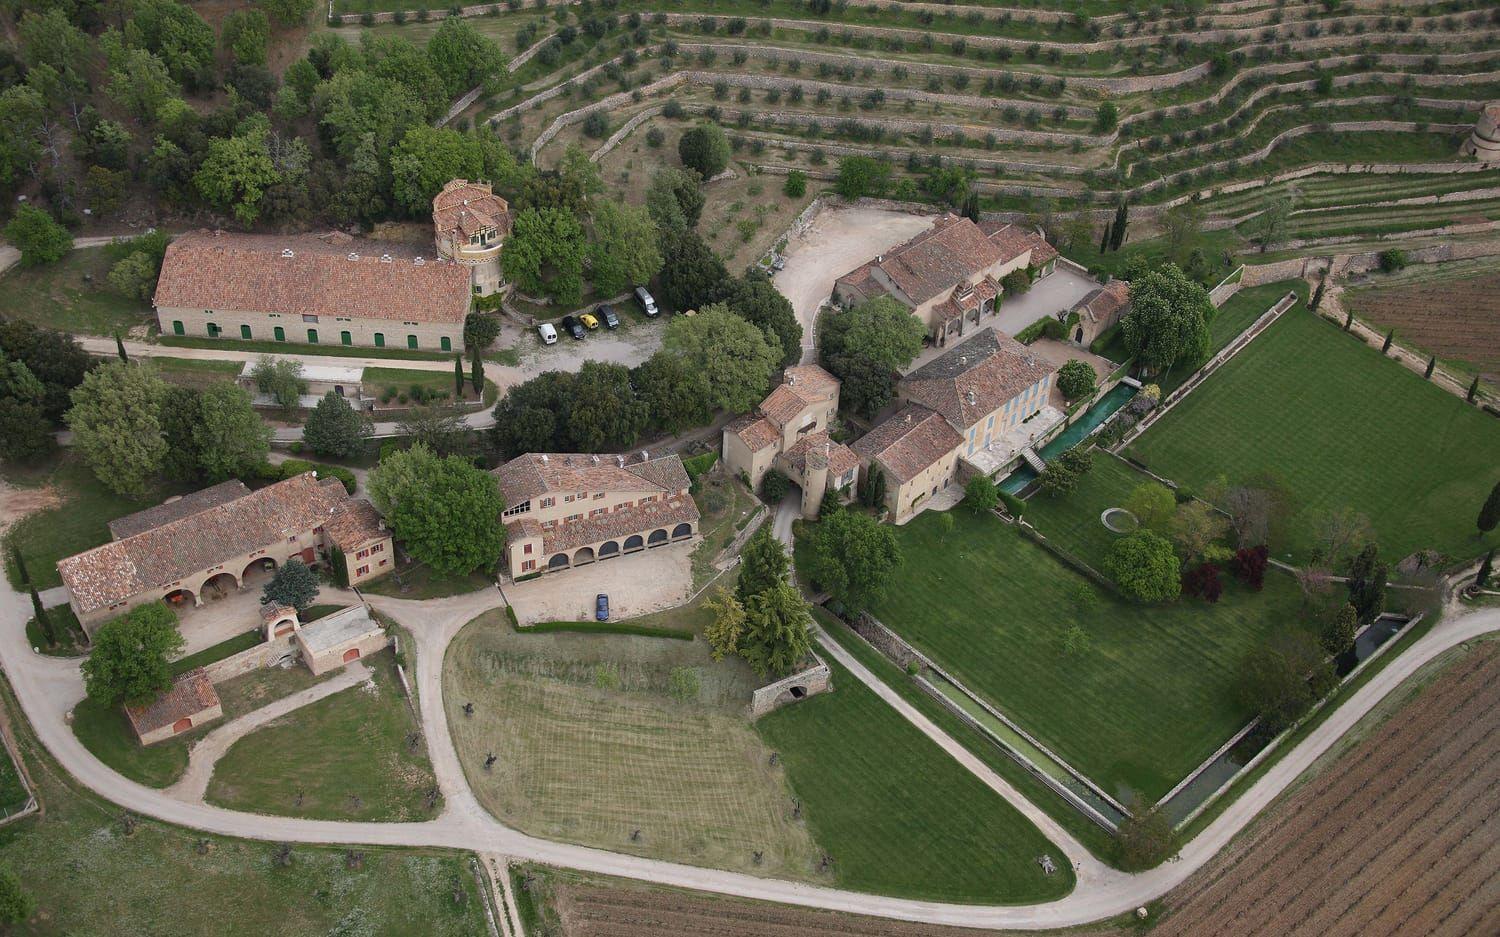 Cirka 60 miljoner dollar lär paret ha betalat när de 2012 slog till och köpte hus i Correns i södra Frankrike. Eller hus och hus. Det här är Chateau Miraval, med anor från 1600-talet, med egen vingård, egen sjö - och egen vallgrav. Bara en sån sak. Foto: Stella Pictures